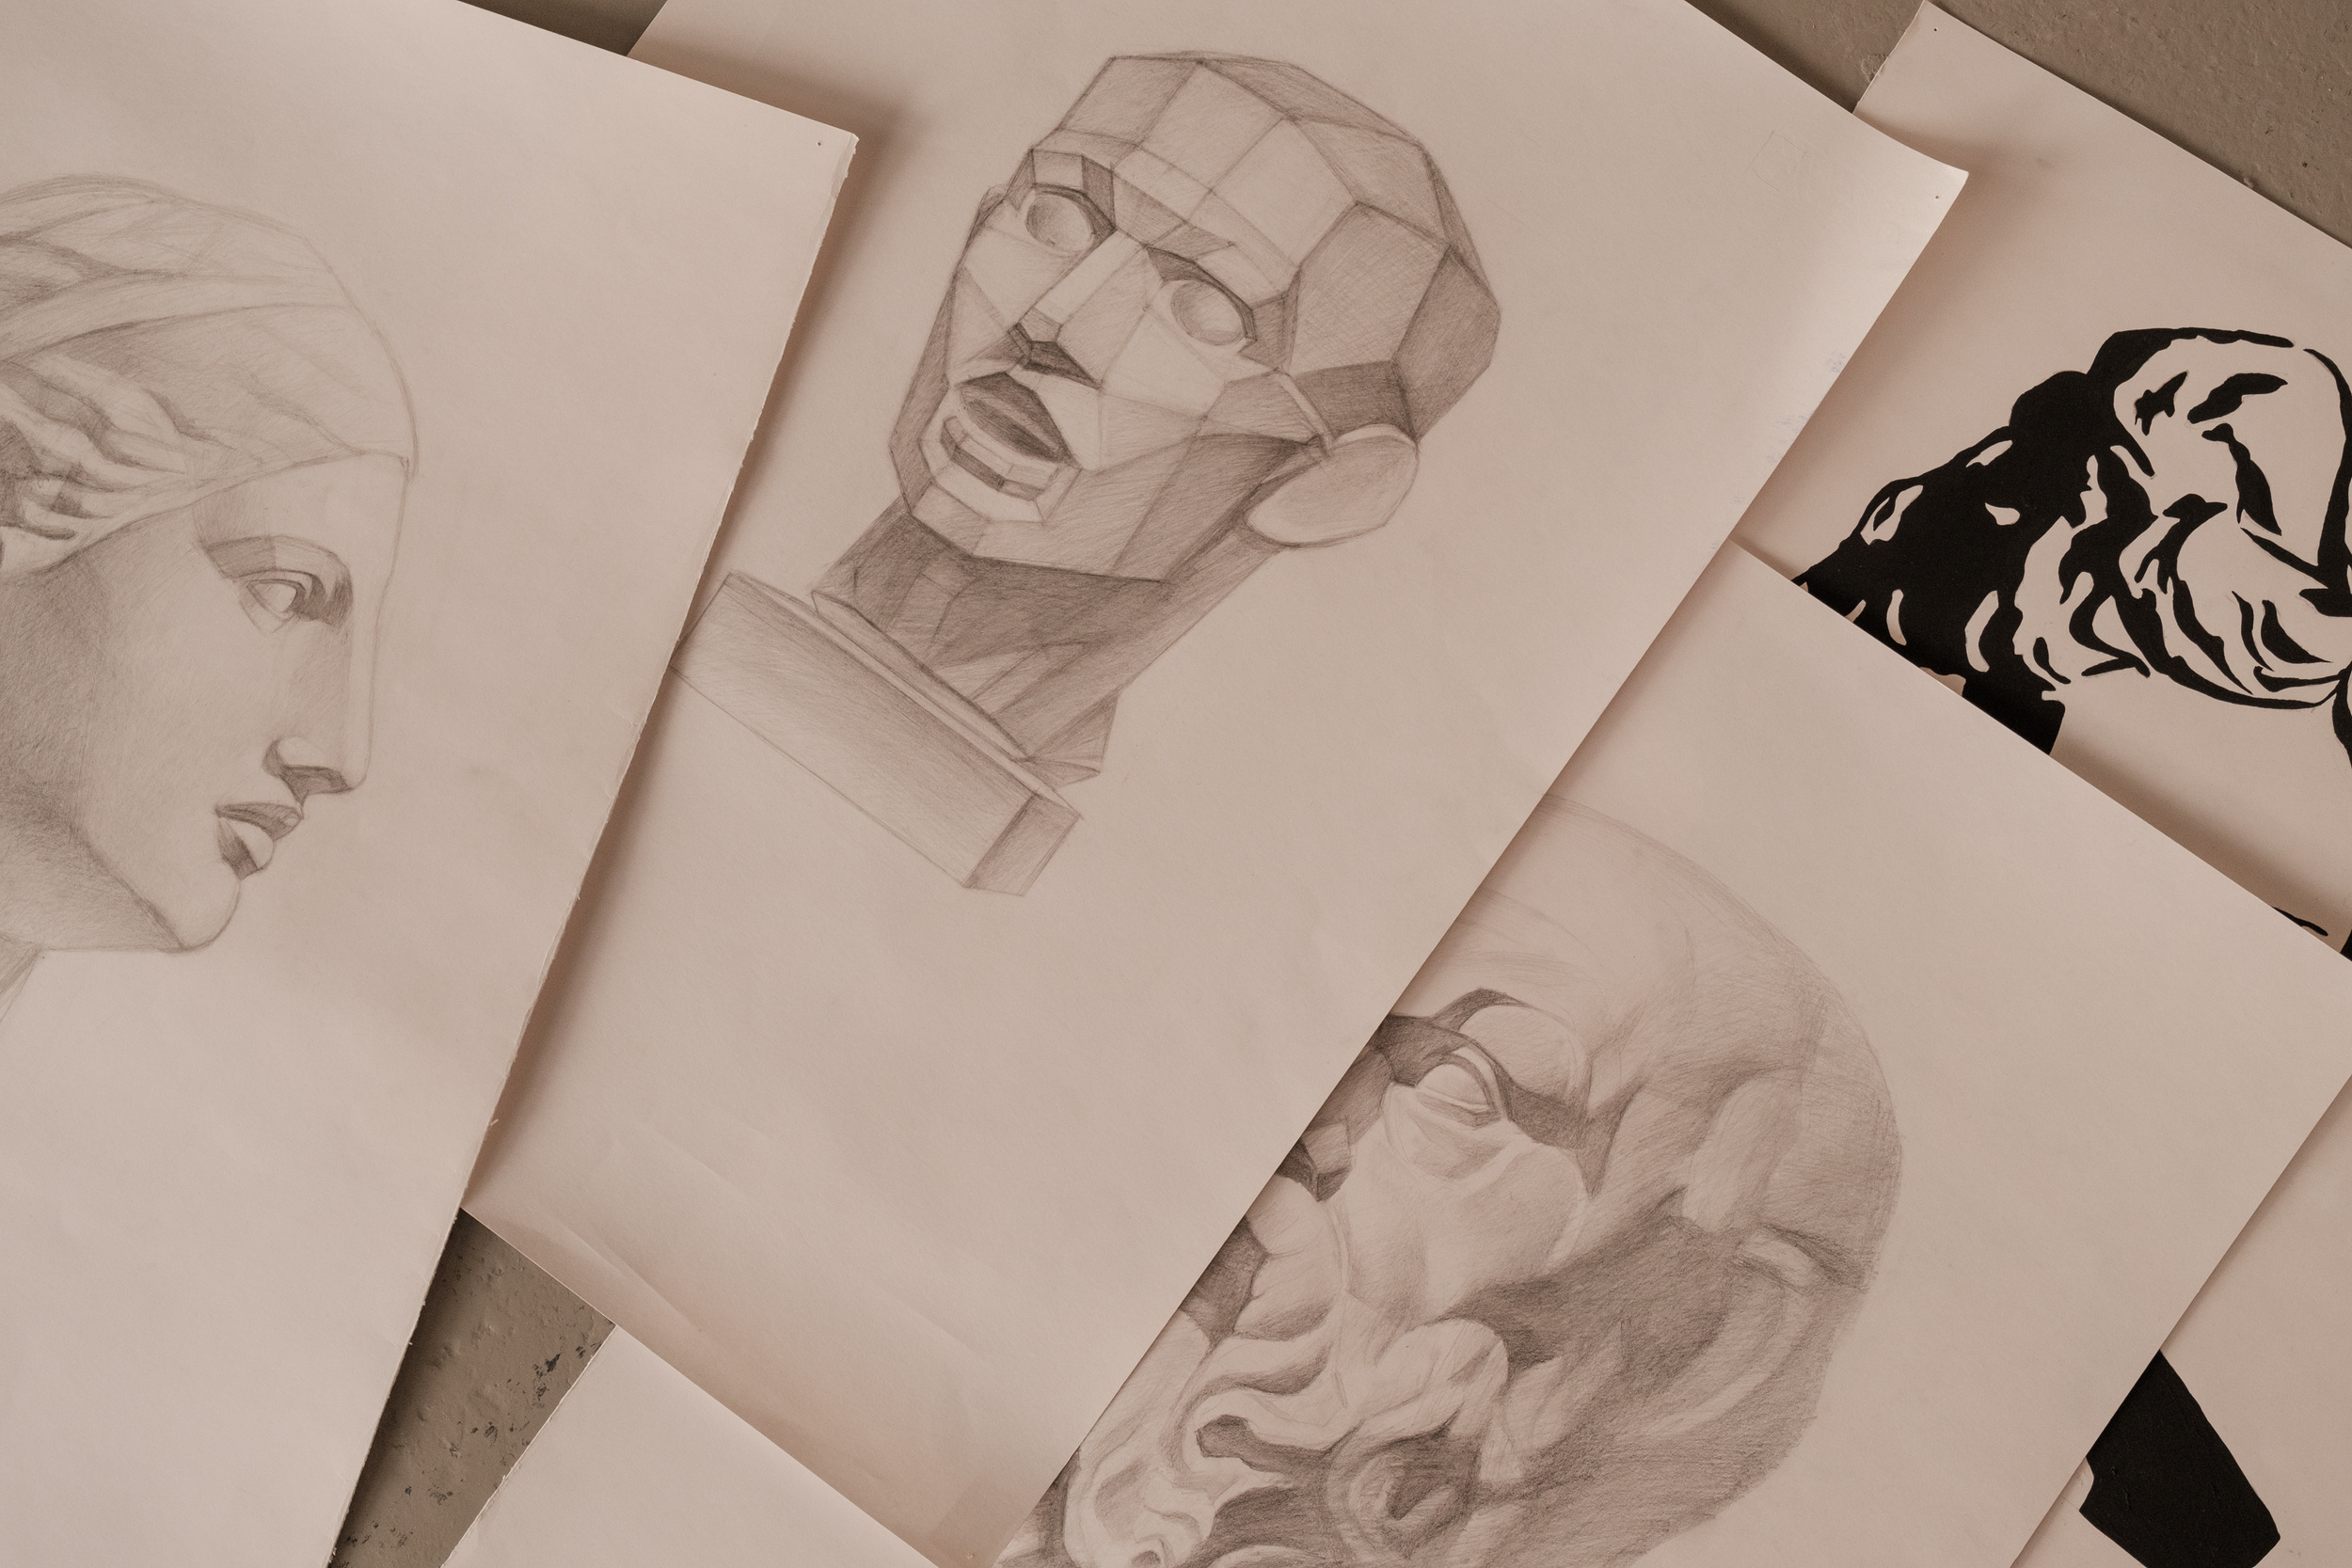 Sketches in Paper in Art Studio